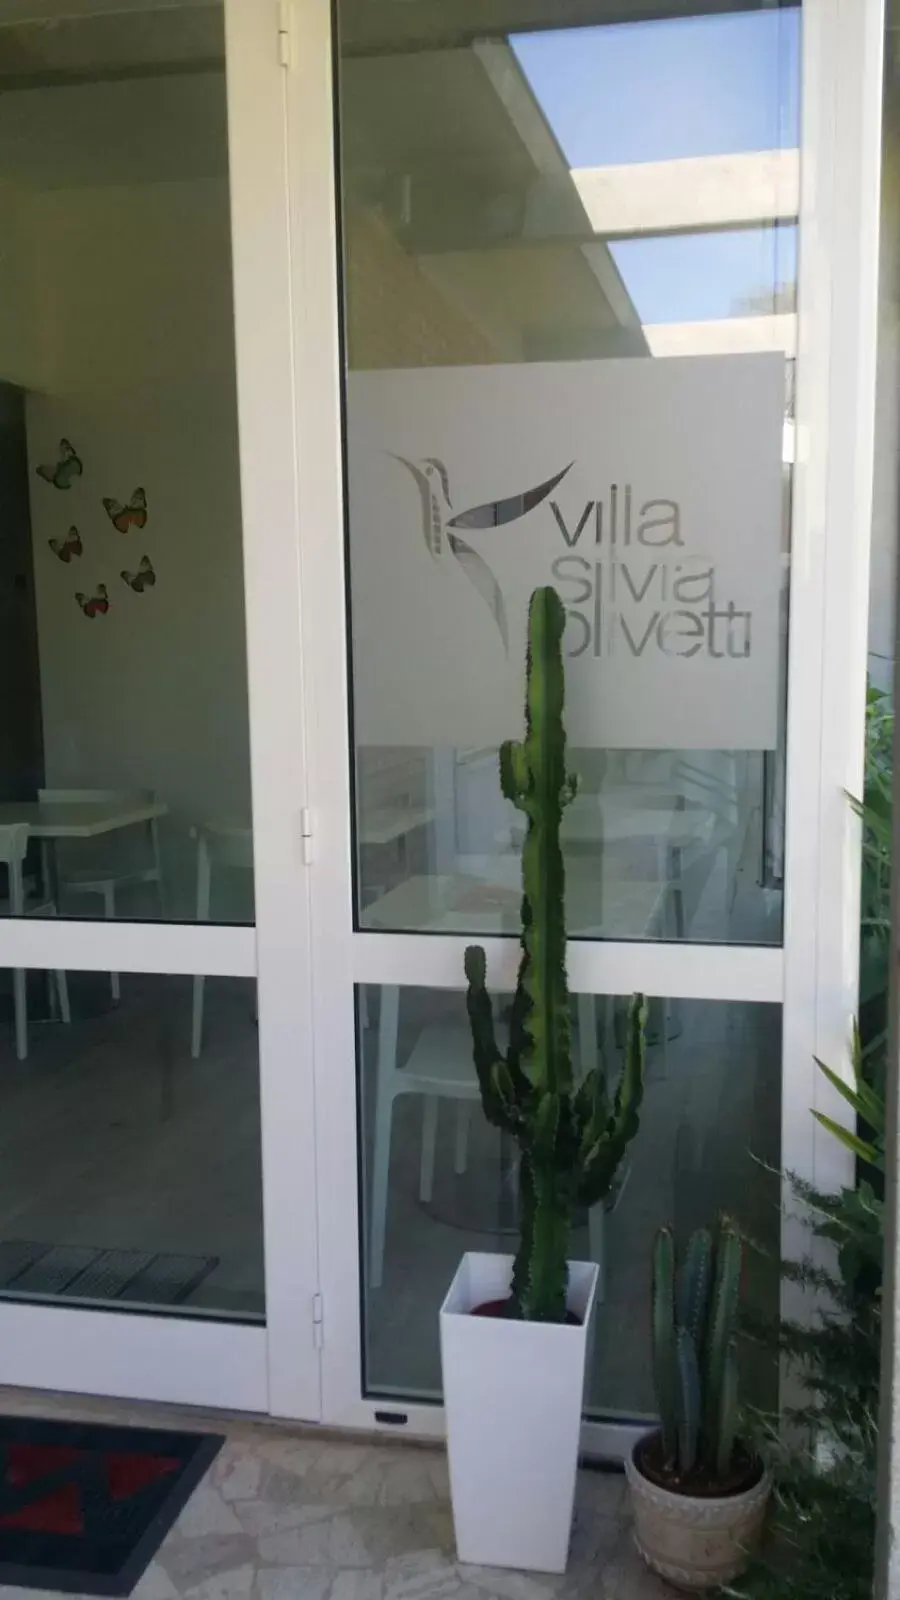 Facade/entrance in Villa Silvia Olivetti